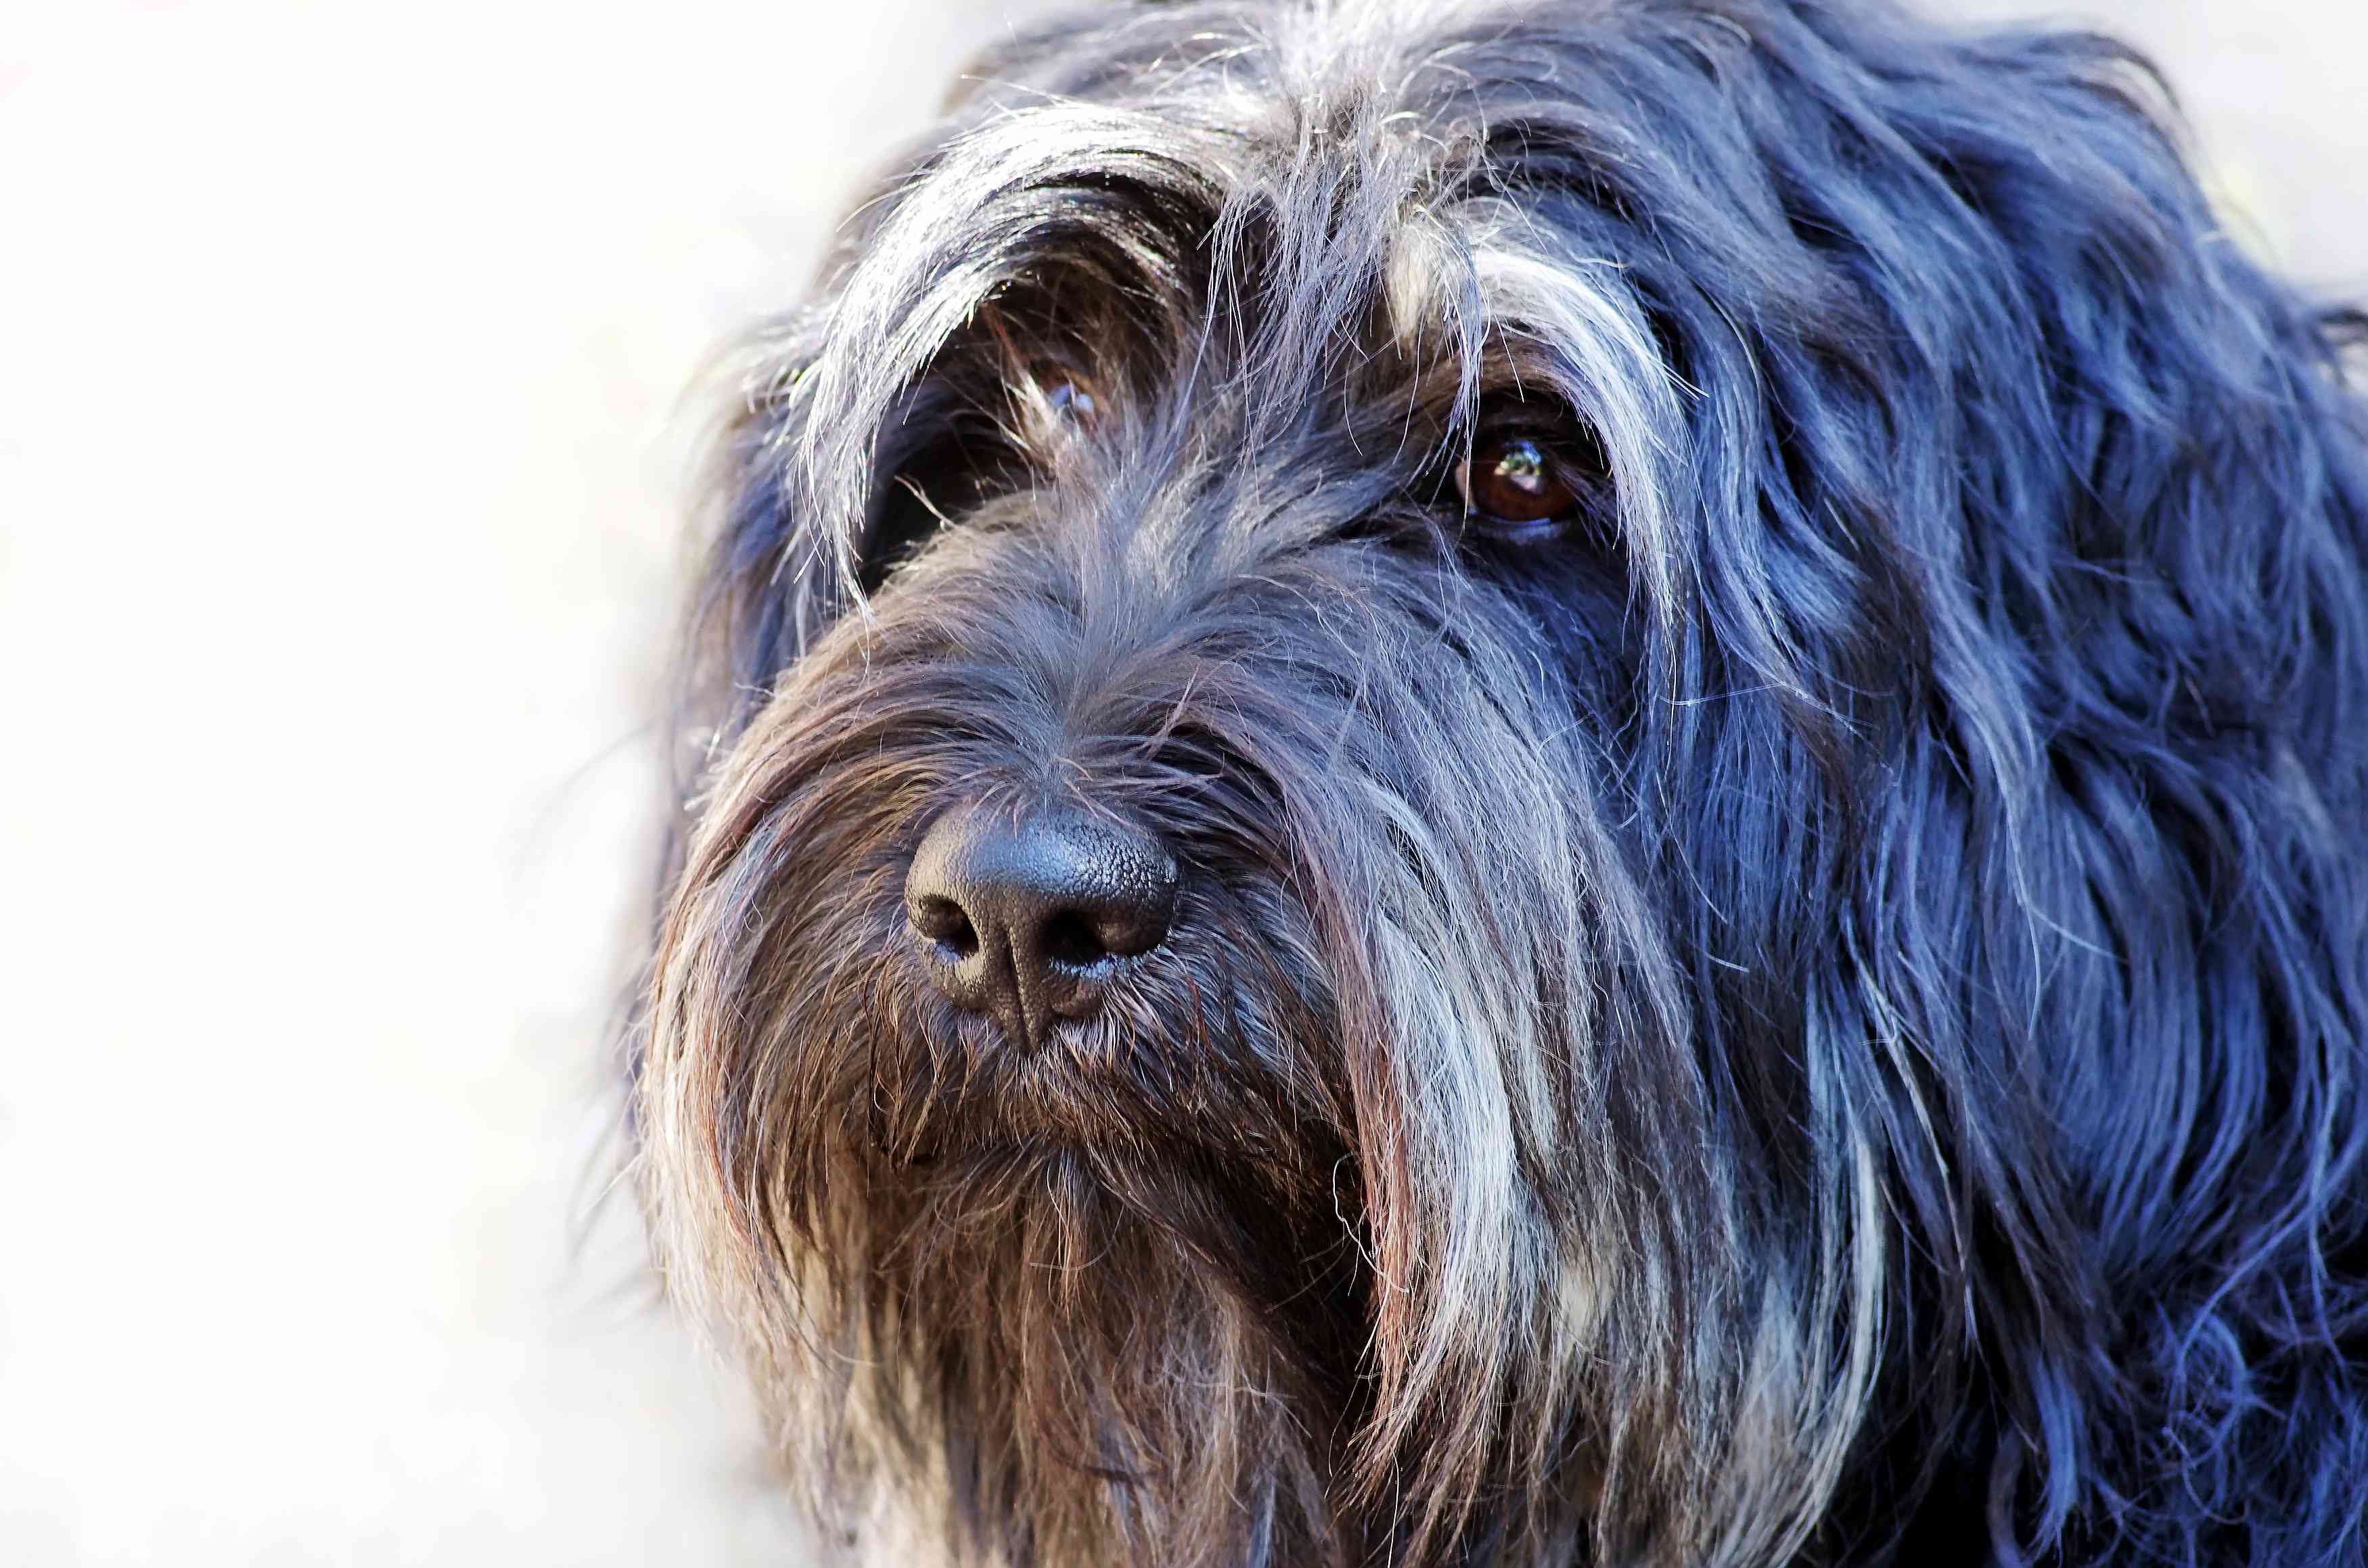 Portuguese Sheepdog portrait; up close of face